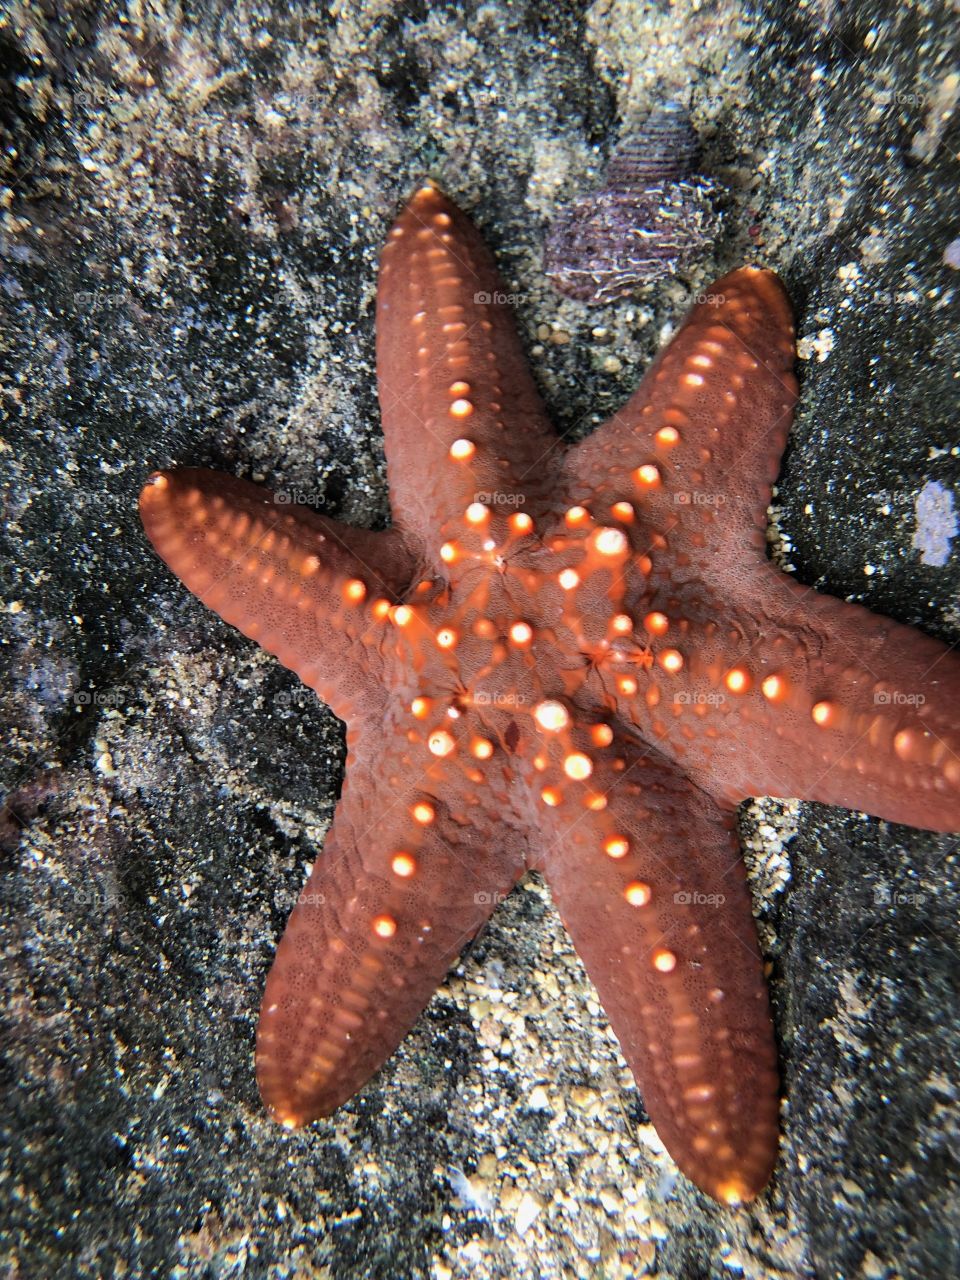 Star Fish underwater pic